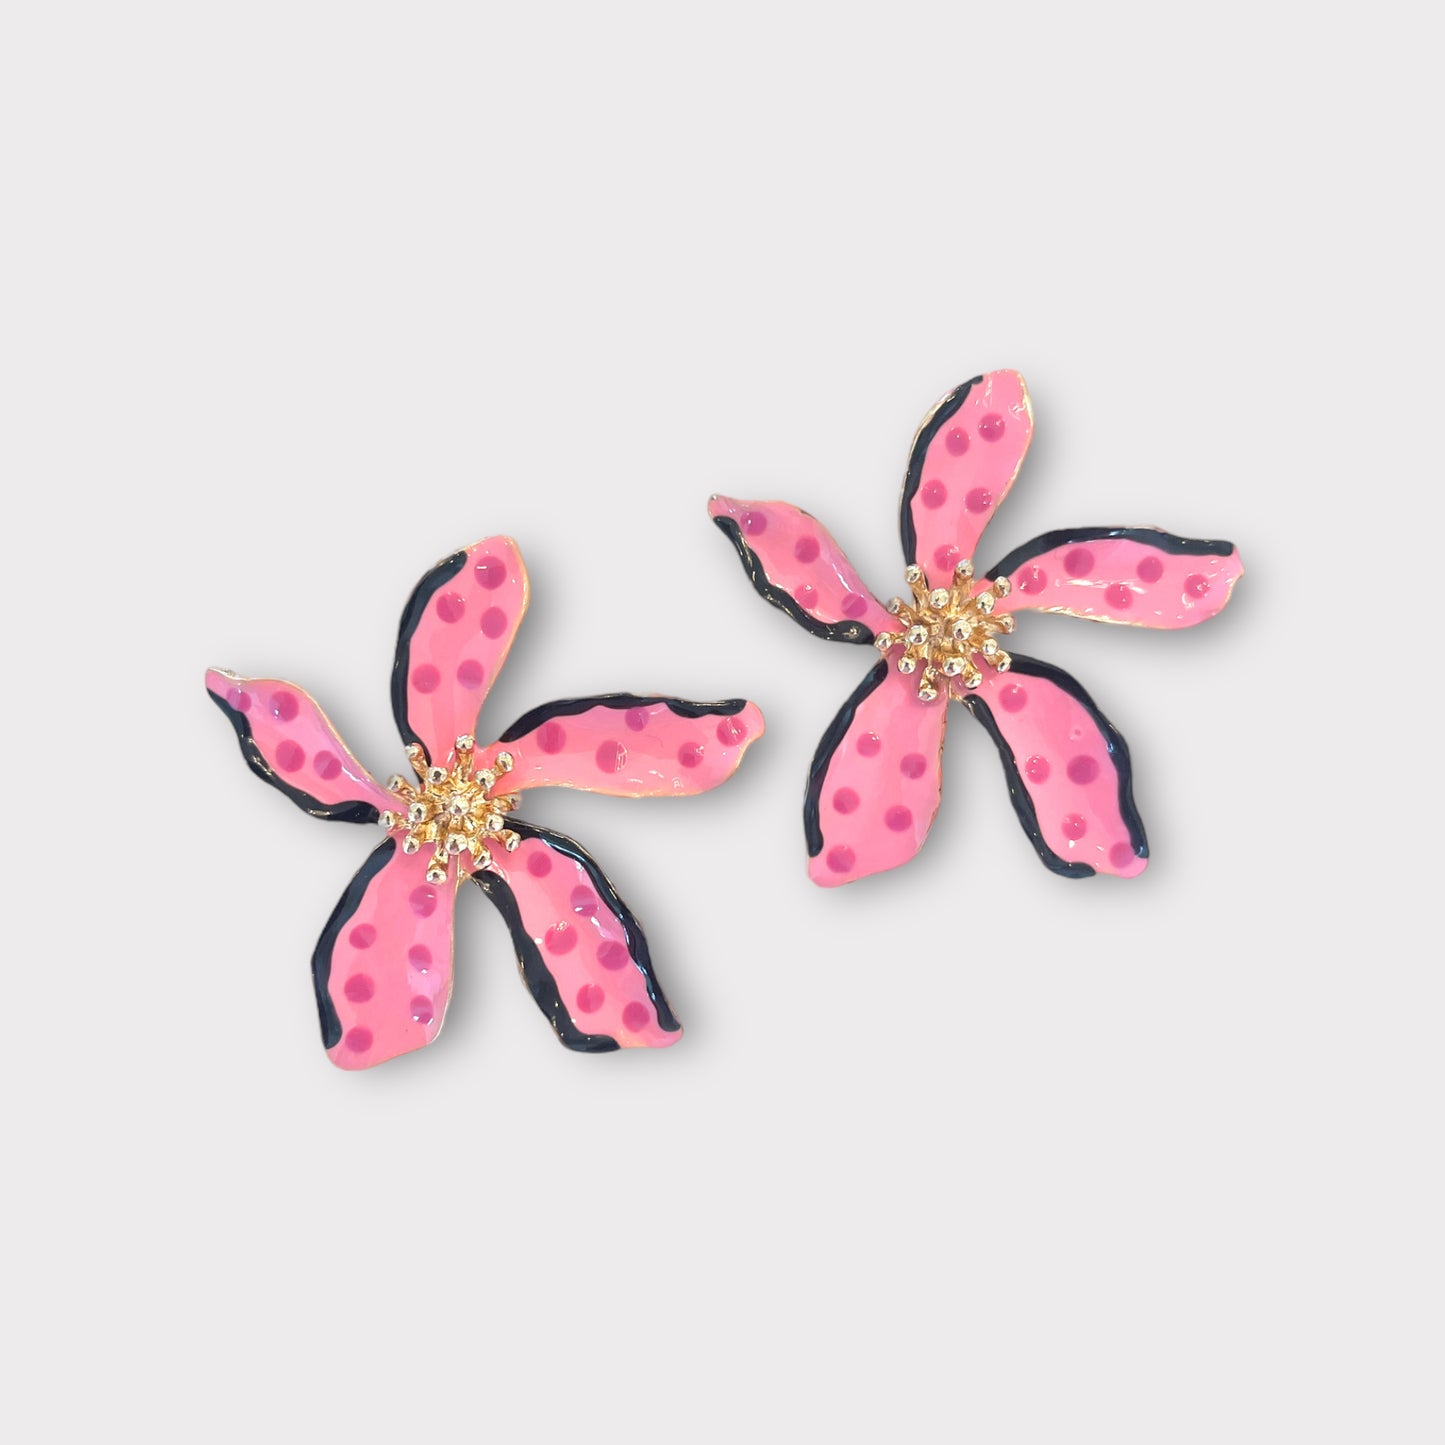 Large Pink Polka Dot Flower Earrings